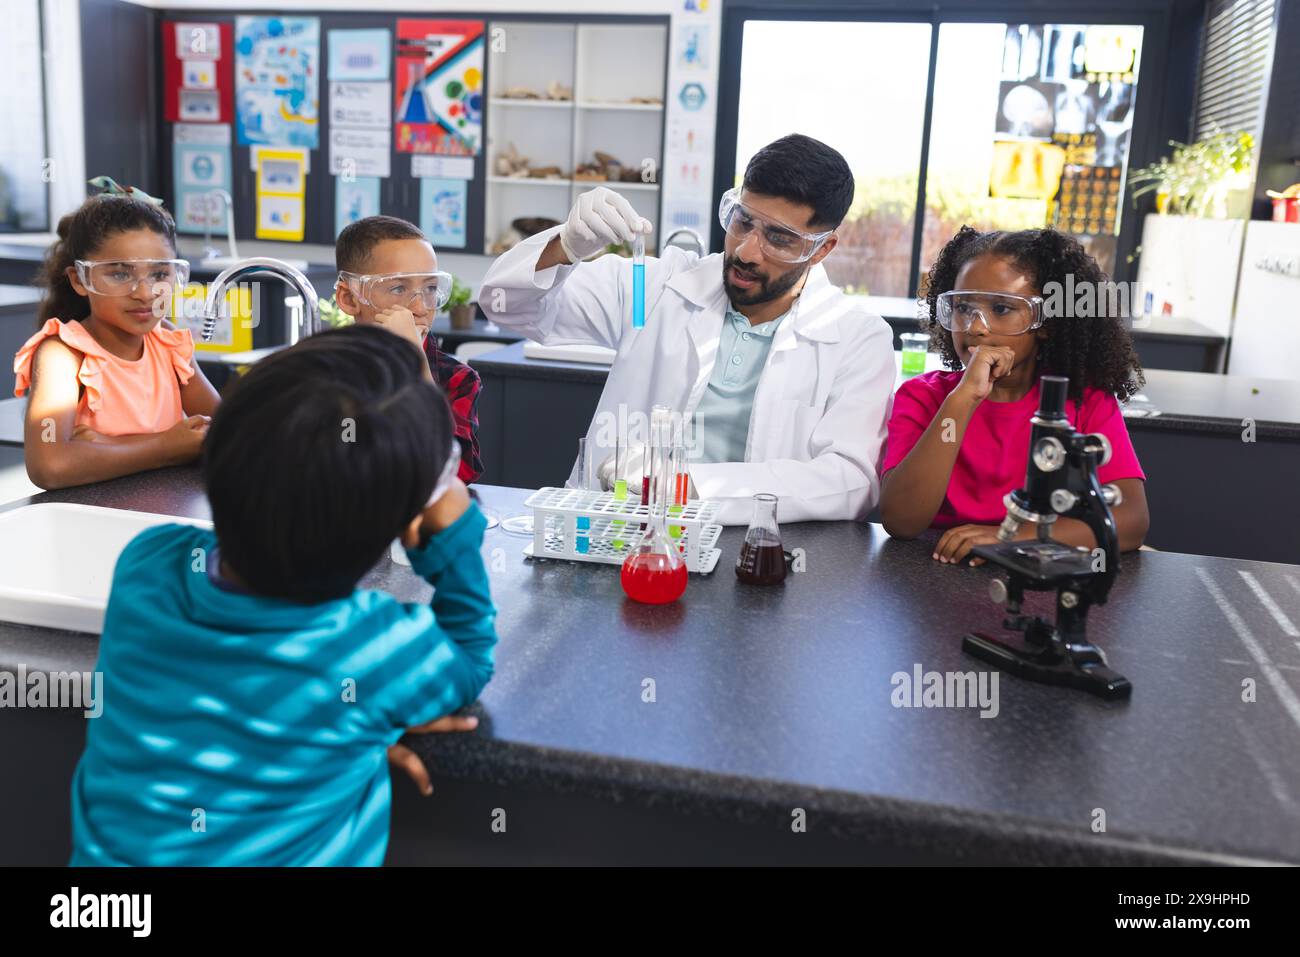 Ein junger asiatischer Lehrer führt ein Wissenschaftsexperiment für aufmerksame Kinder in der Schule durch Stockfoto